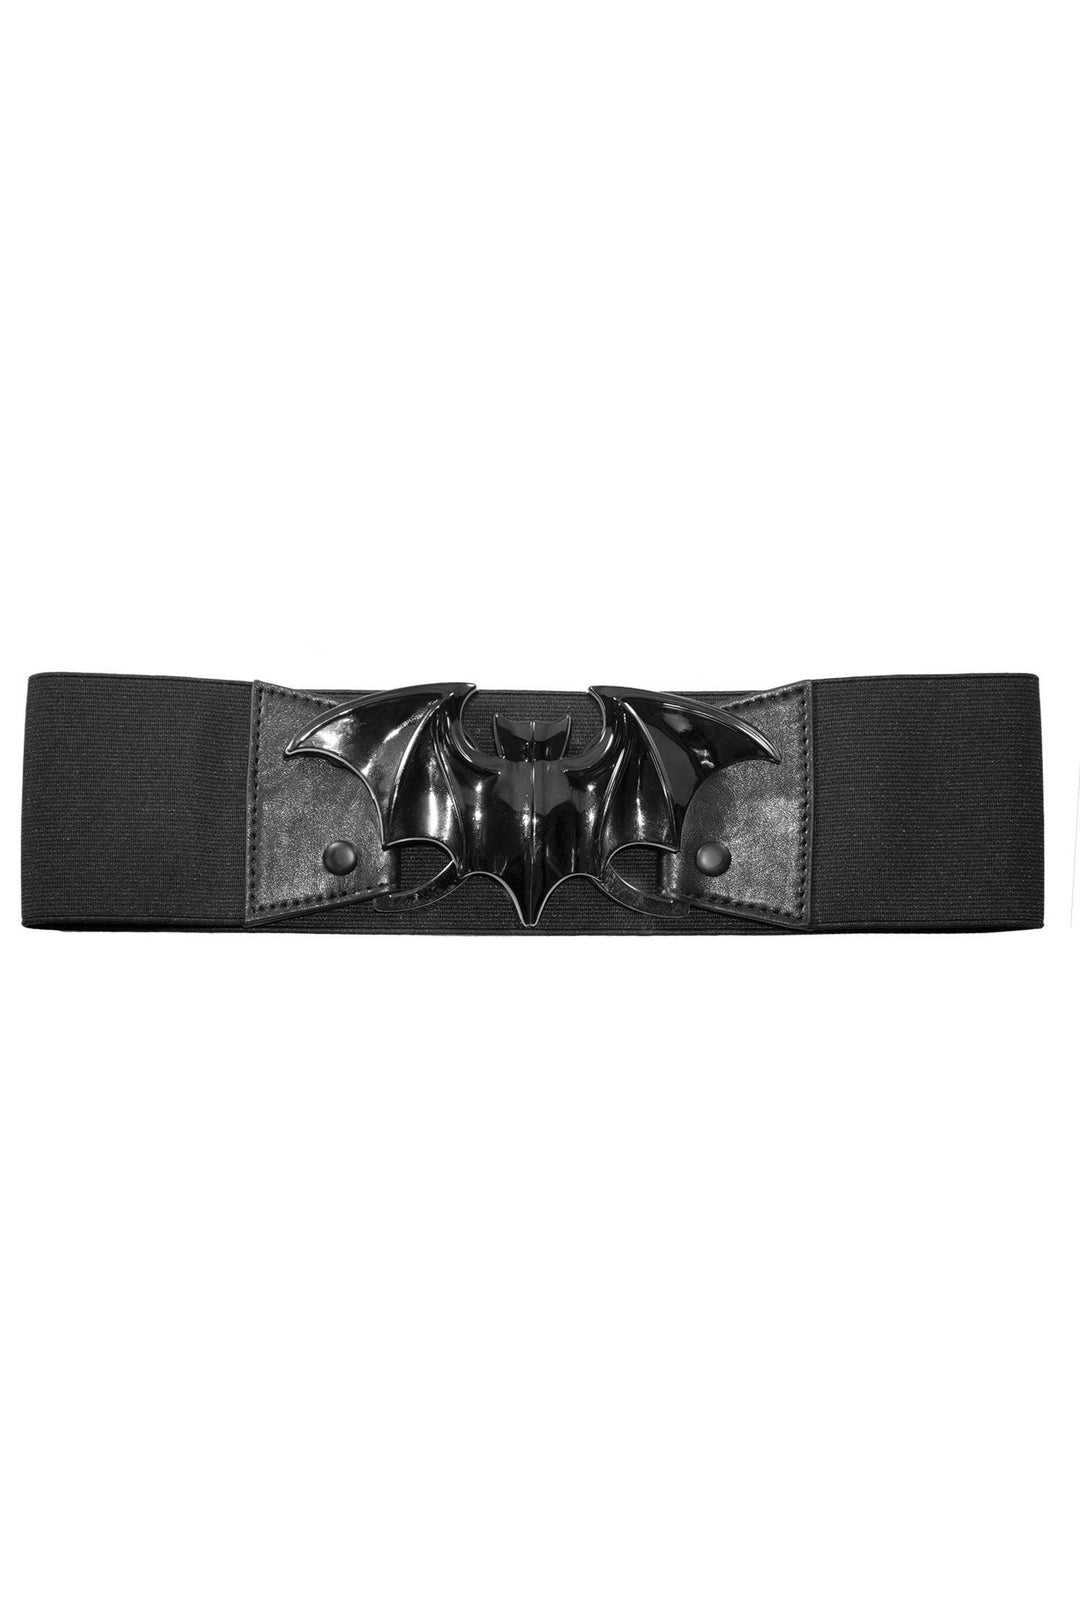 Kreepsville Bat Elastic Waist Belt [Black] - VampireFreaks